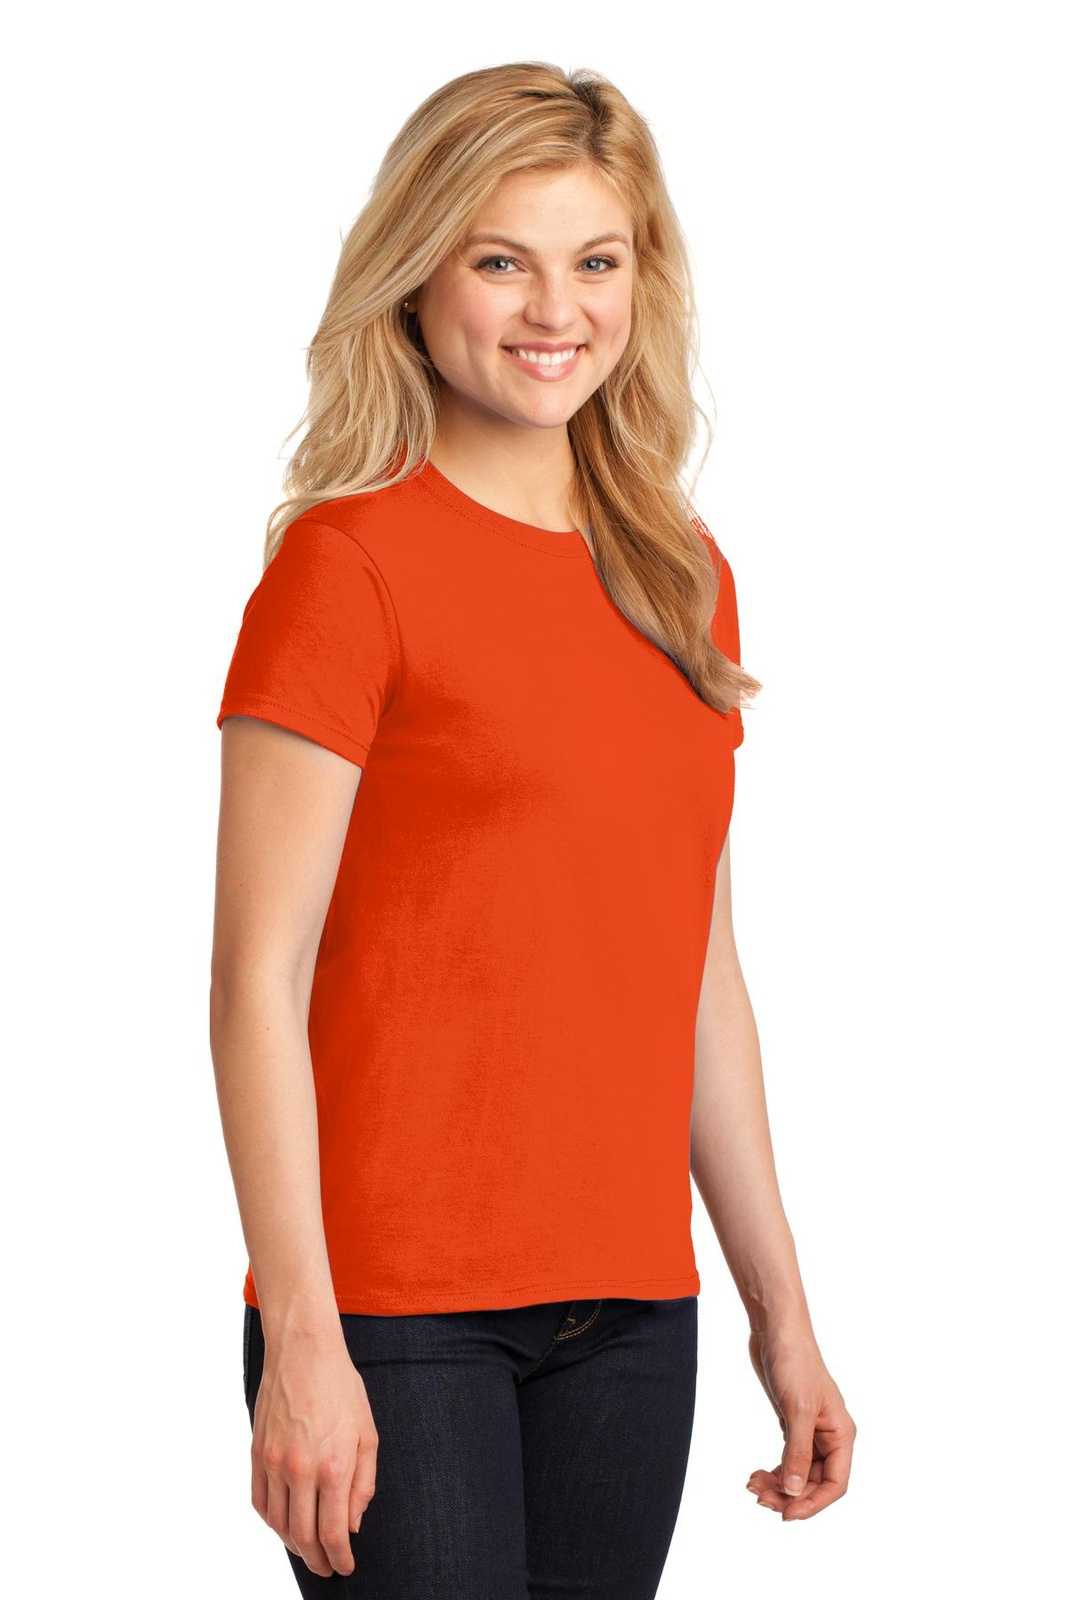 Gildan 5000L Ladies Heavy Cotton 100% Cotton T-Shirt - Orange - HIT a Double